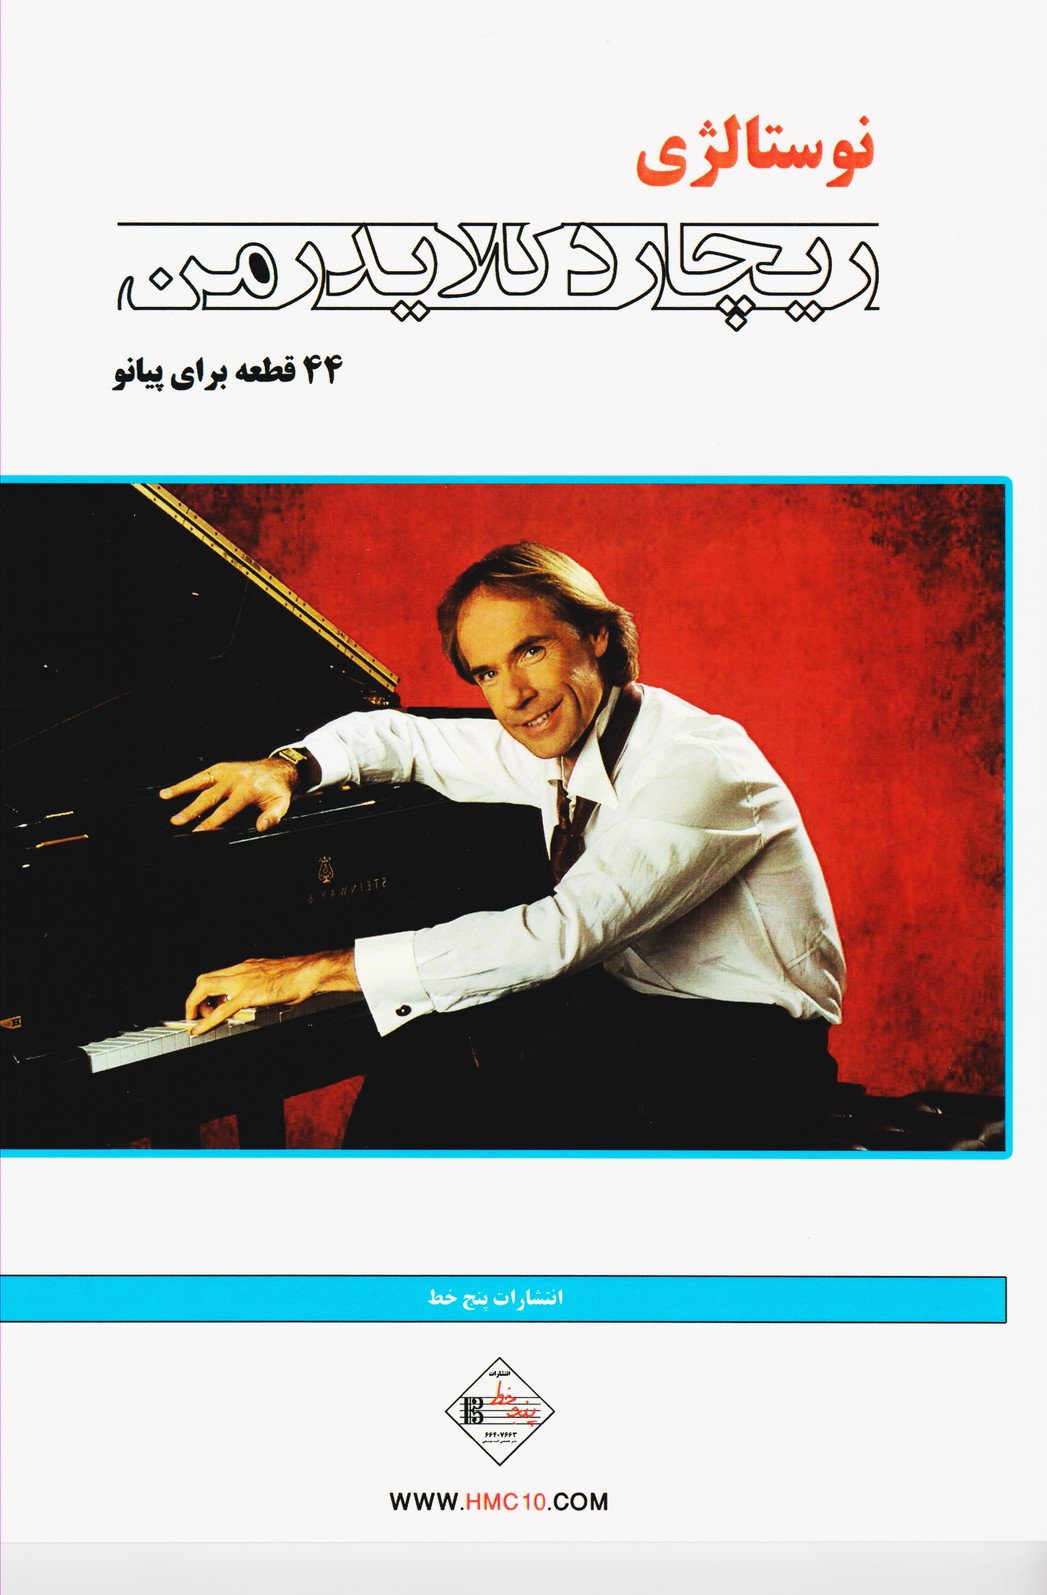 نوستالژی (ریچارد کلایدرمن) 44 قطعه برای پیانو